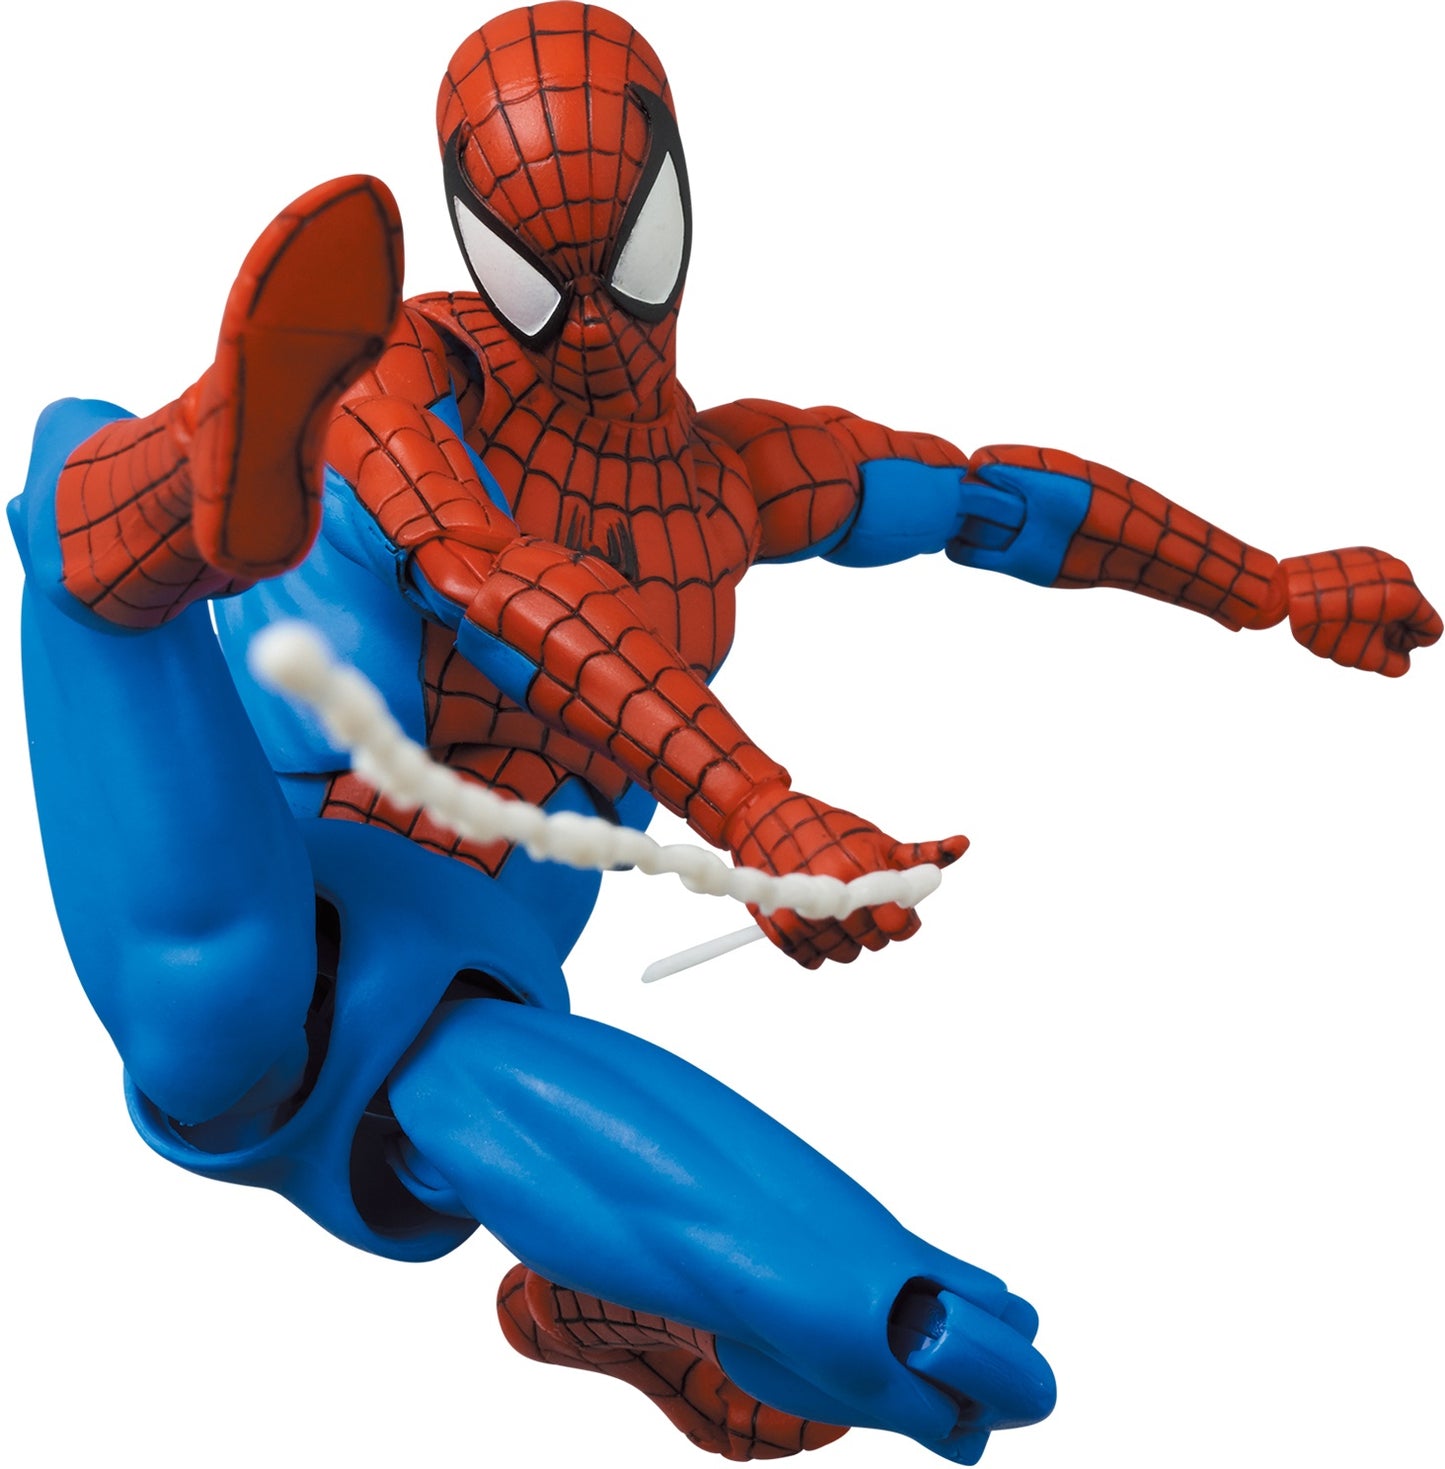 MAFEX Amazing Spider-Man (Classic) PREVENTA (PF$2100, AP$500) - LIMITE 1 POR PERSONA